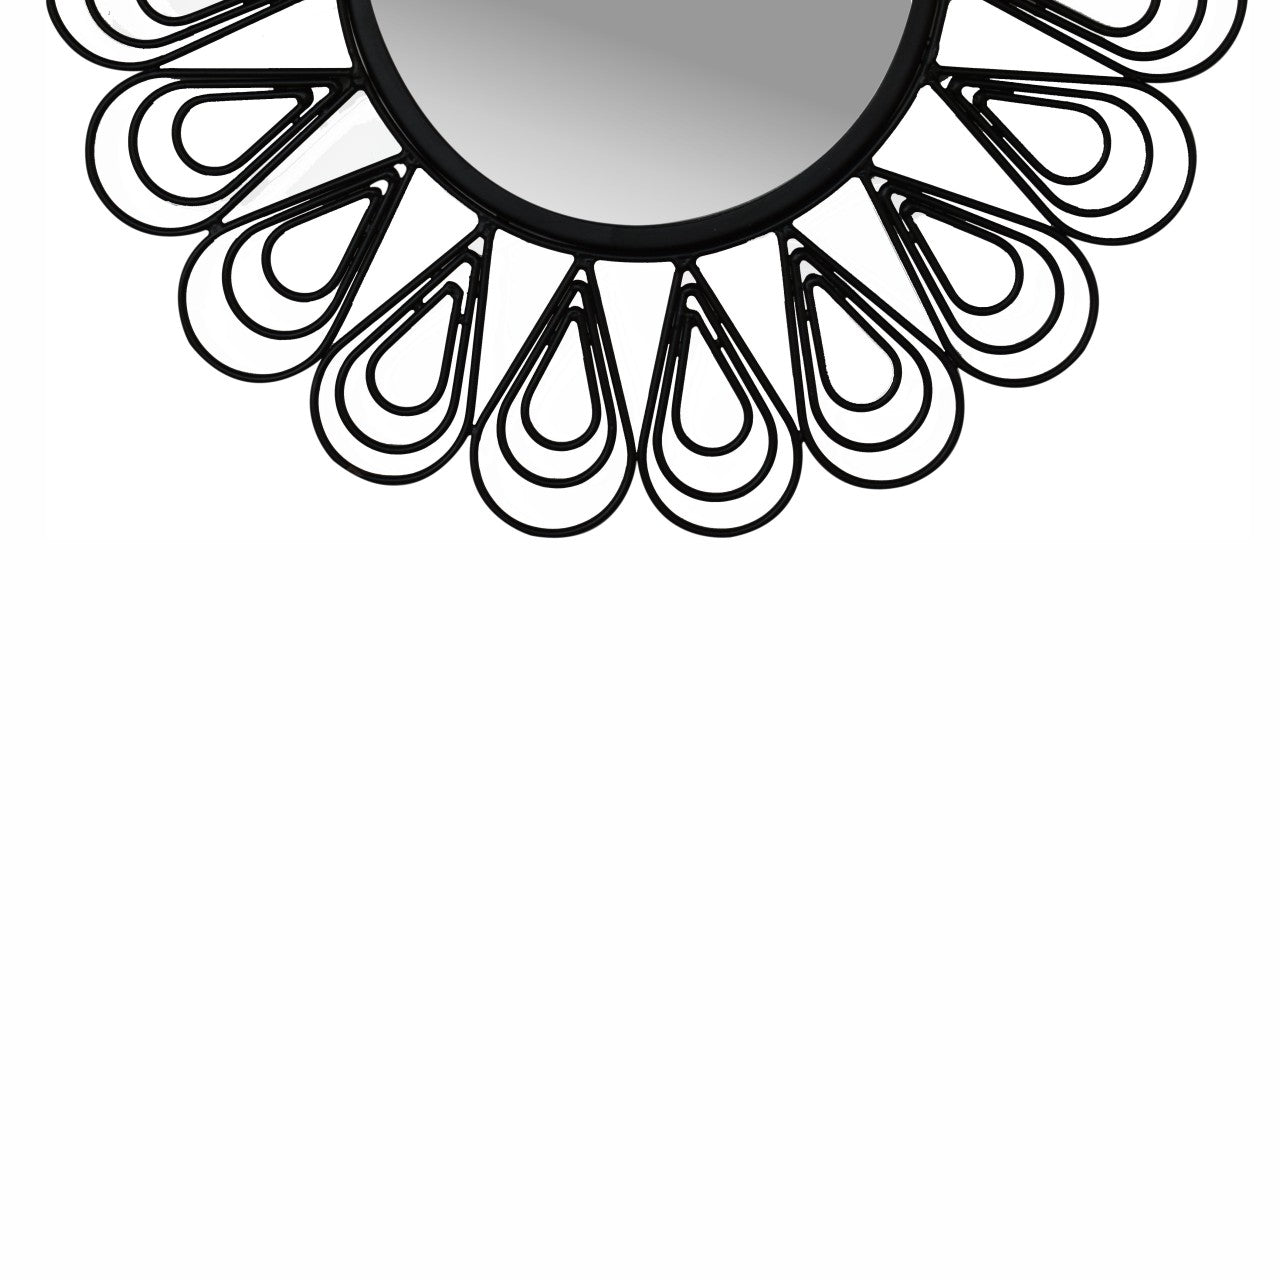 Miroir à fleurs filaire avec revêtement noir